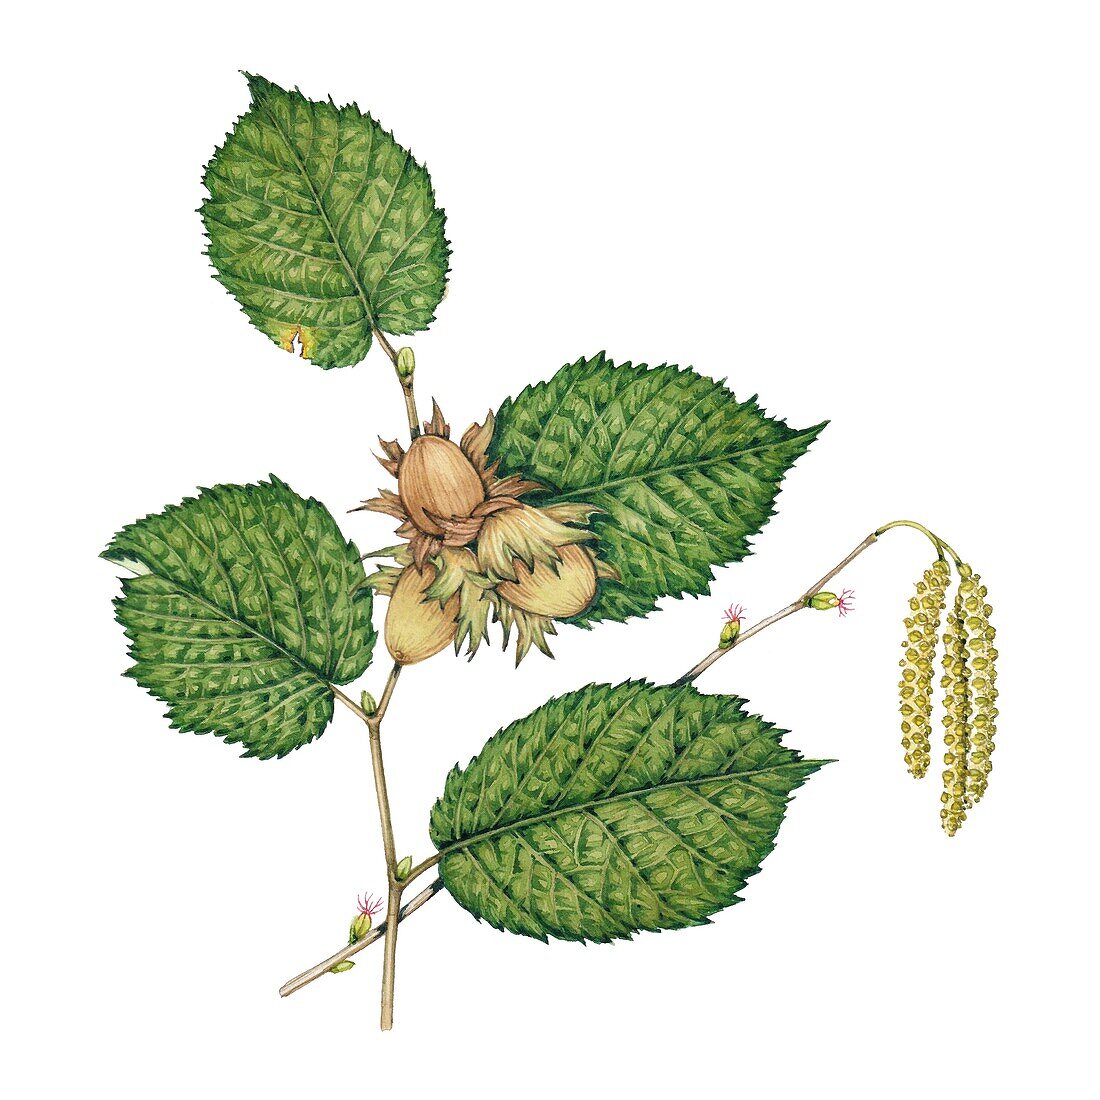 Hazel (Corylus avellana) leaves, illustration